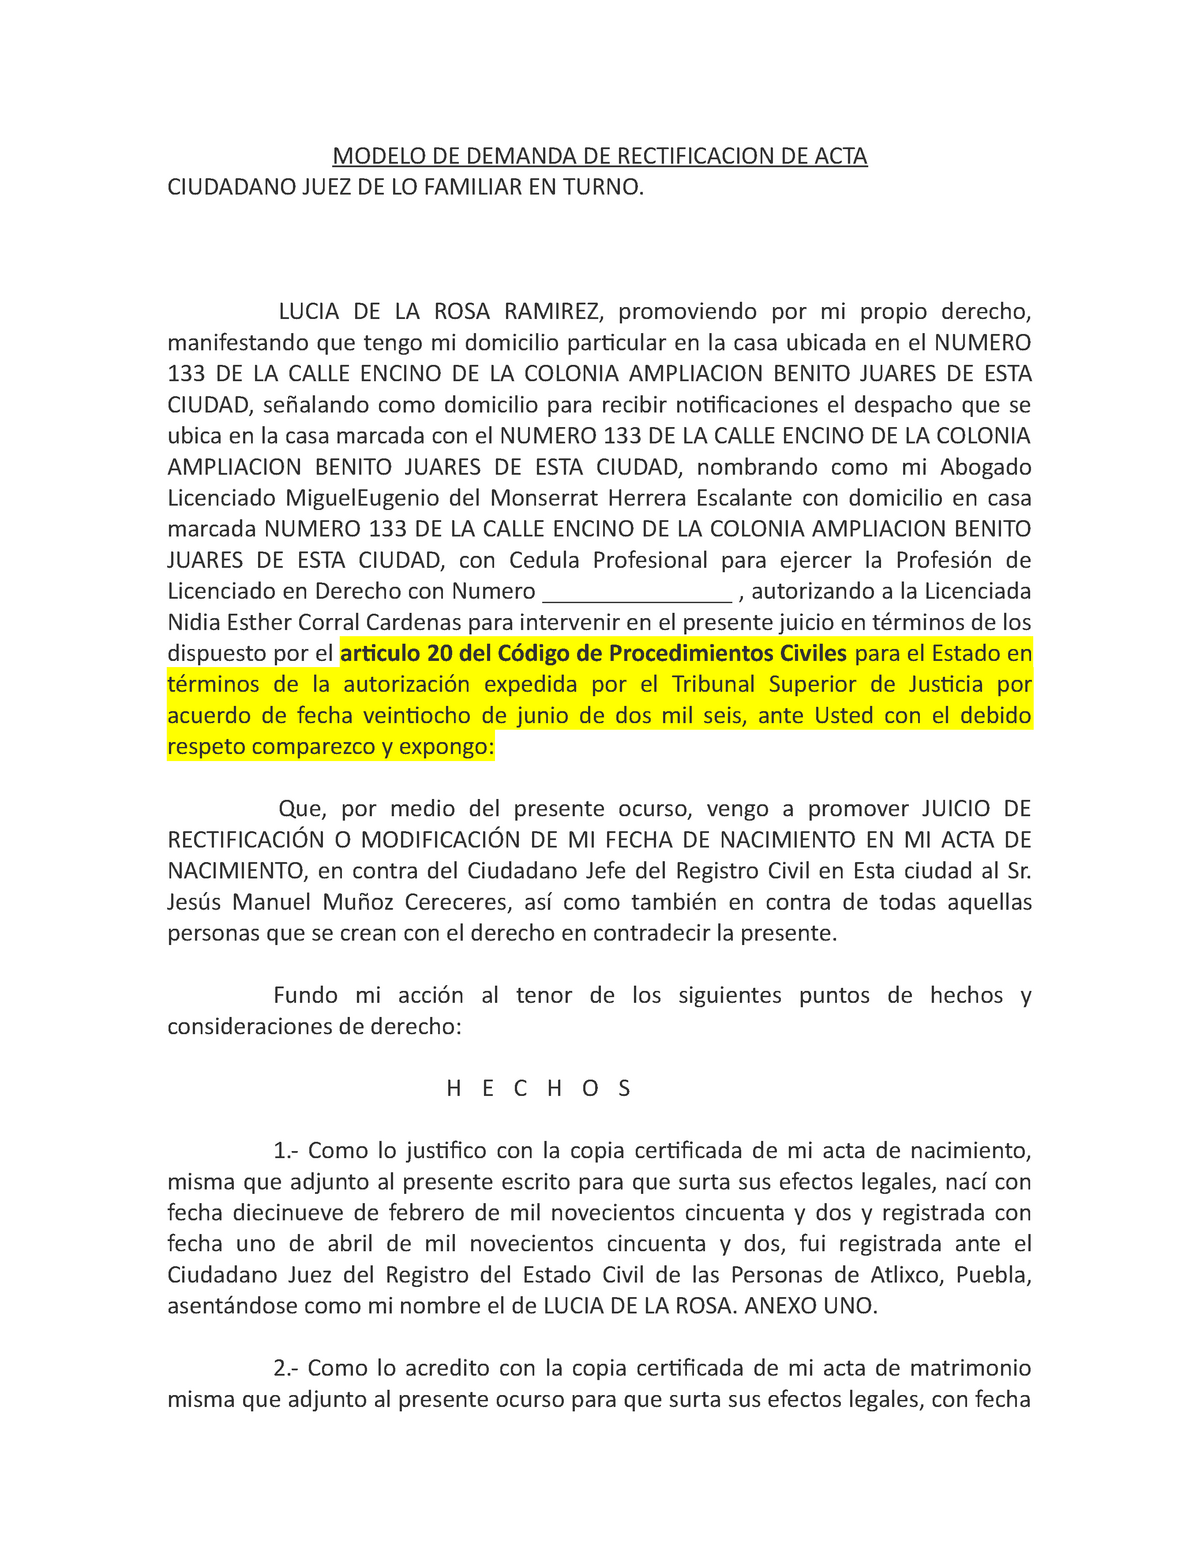 Demanda de rectificacion de acta - MODELO DE DEMANDA DE RECTIFICACION DE  ACTA CIUDADANO JUEZ DE LO - Studocu